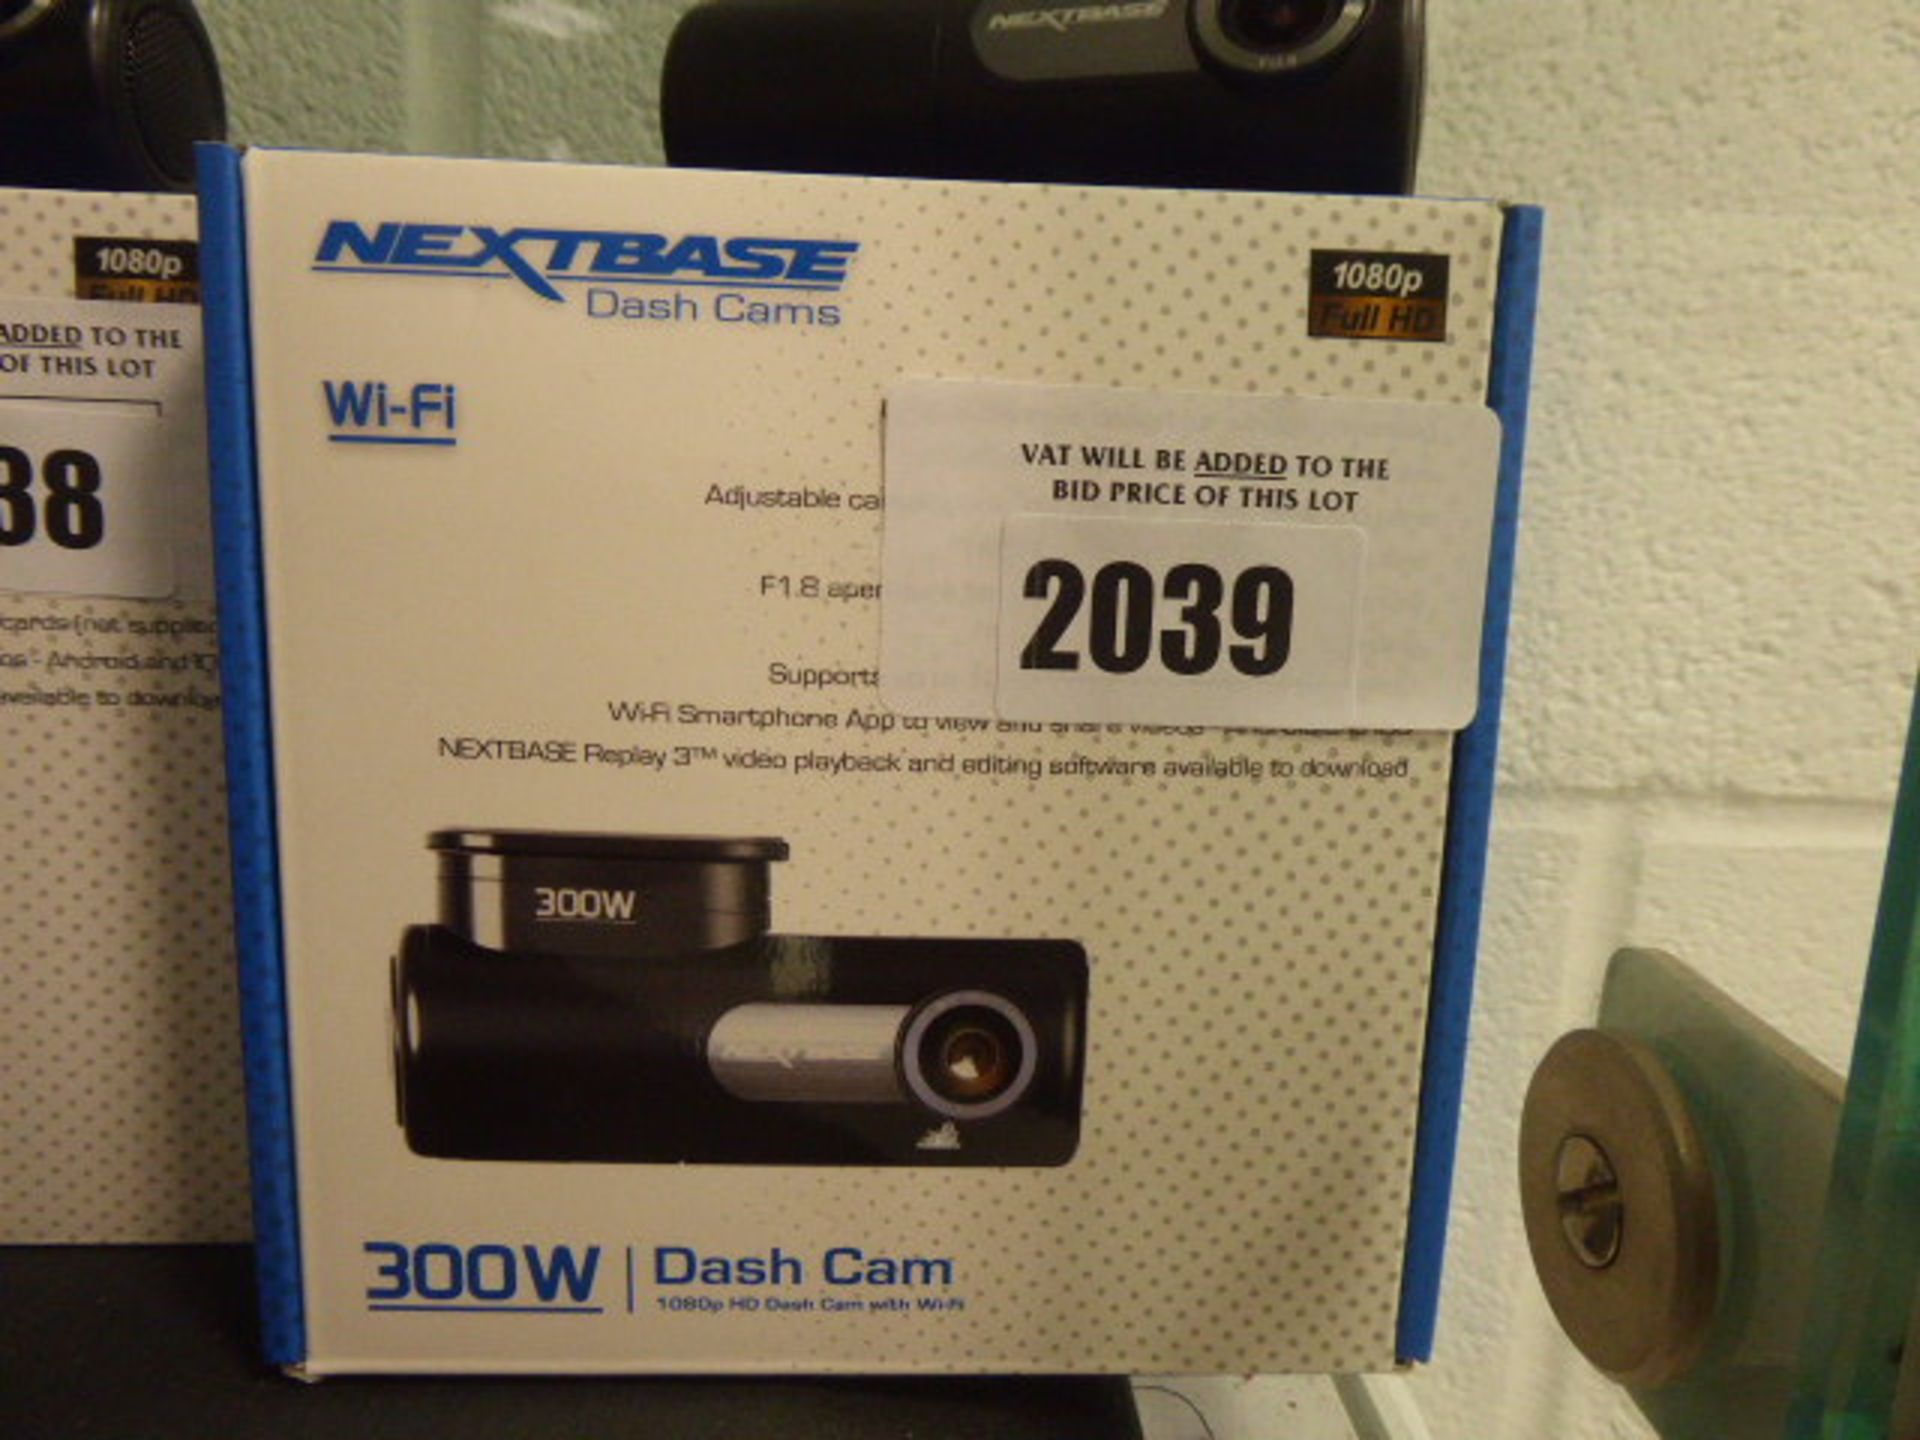 Nextbase wi-fi 300W dashcam with box